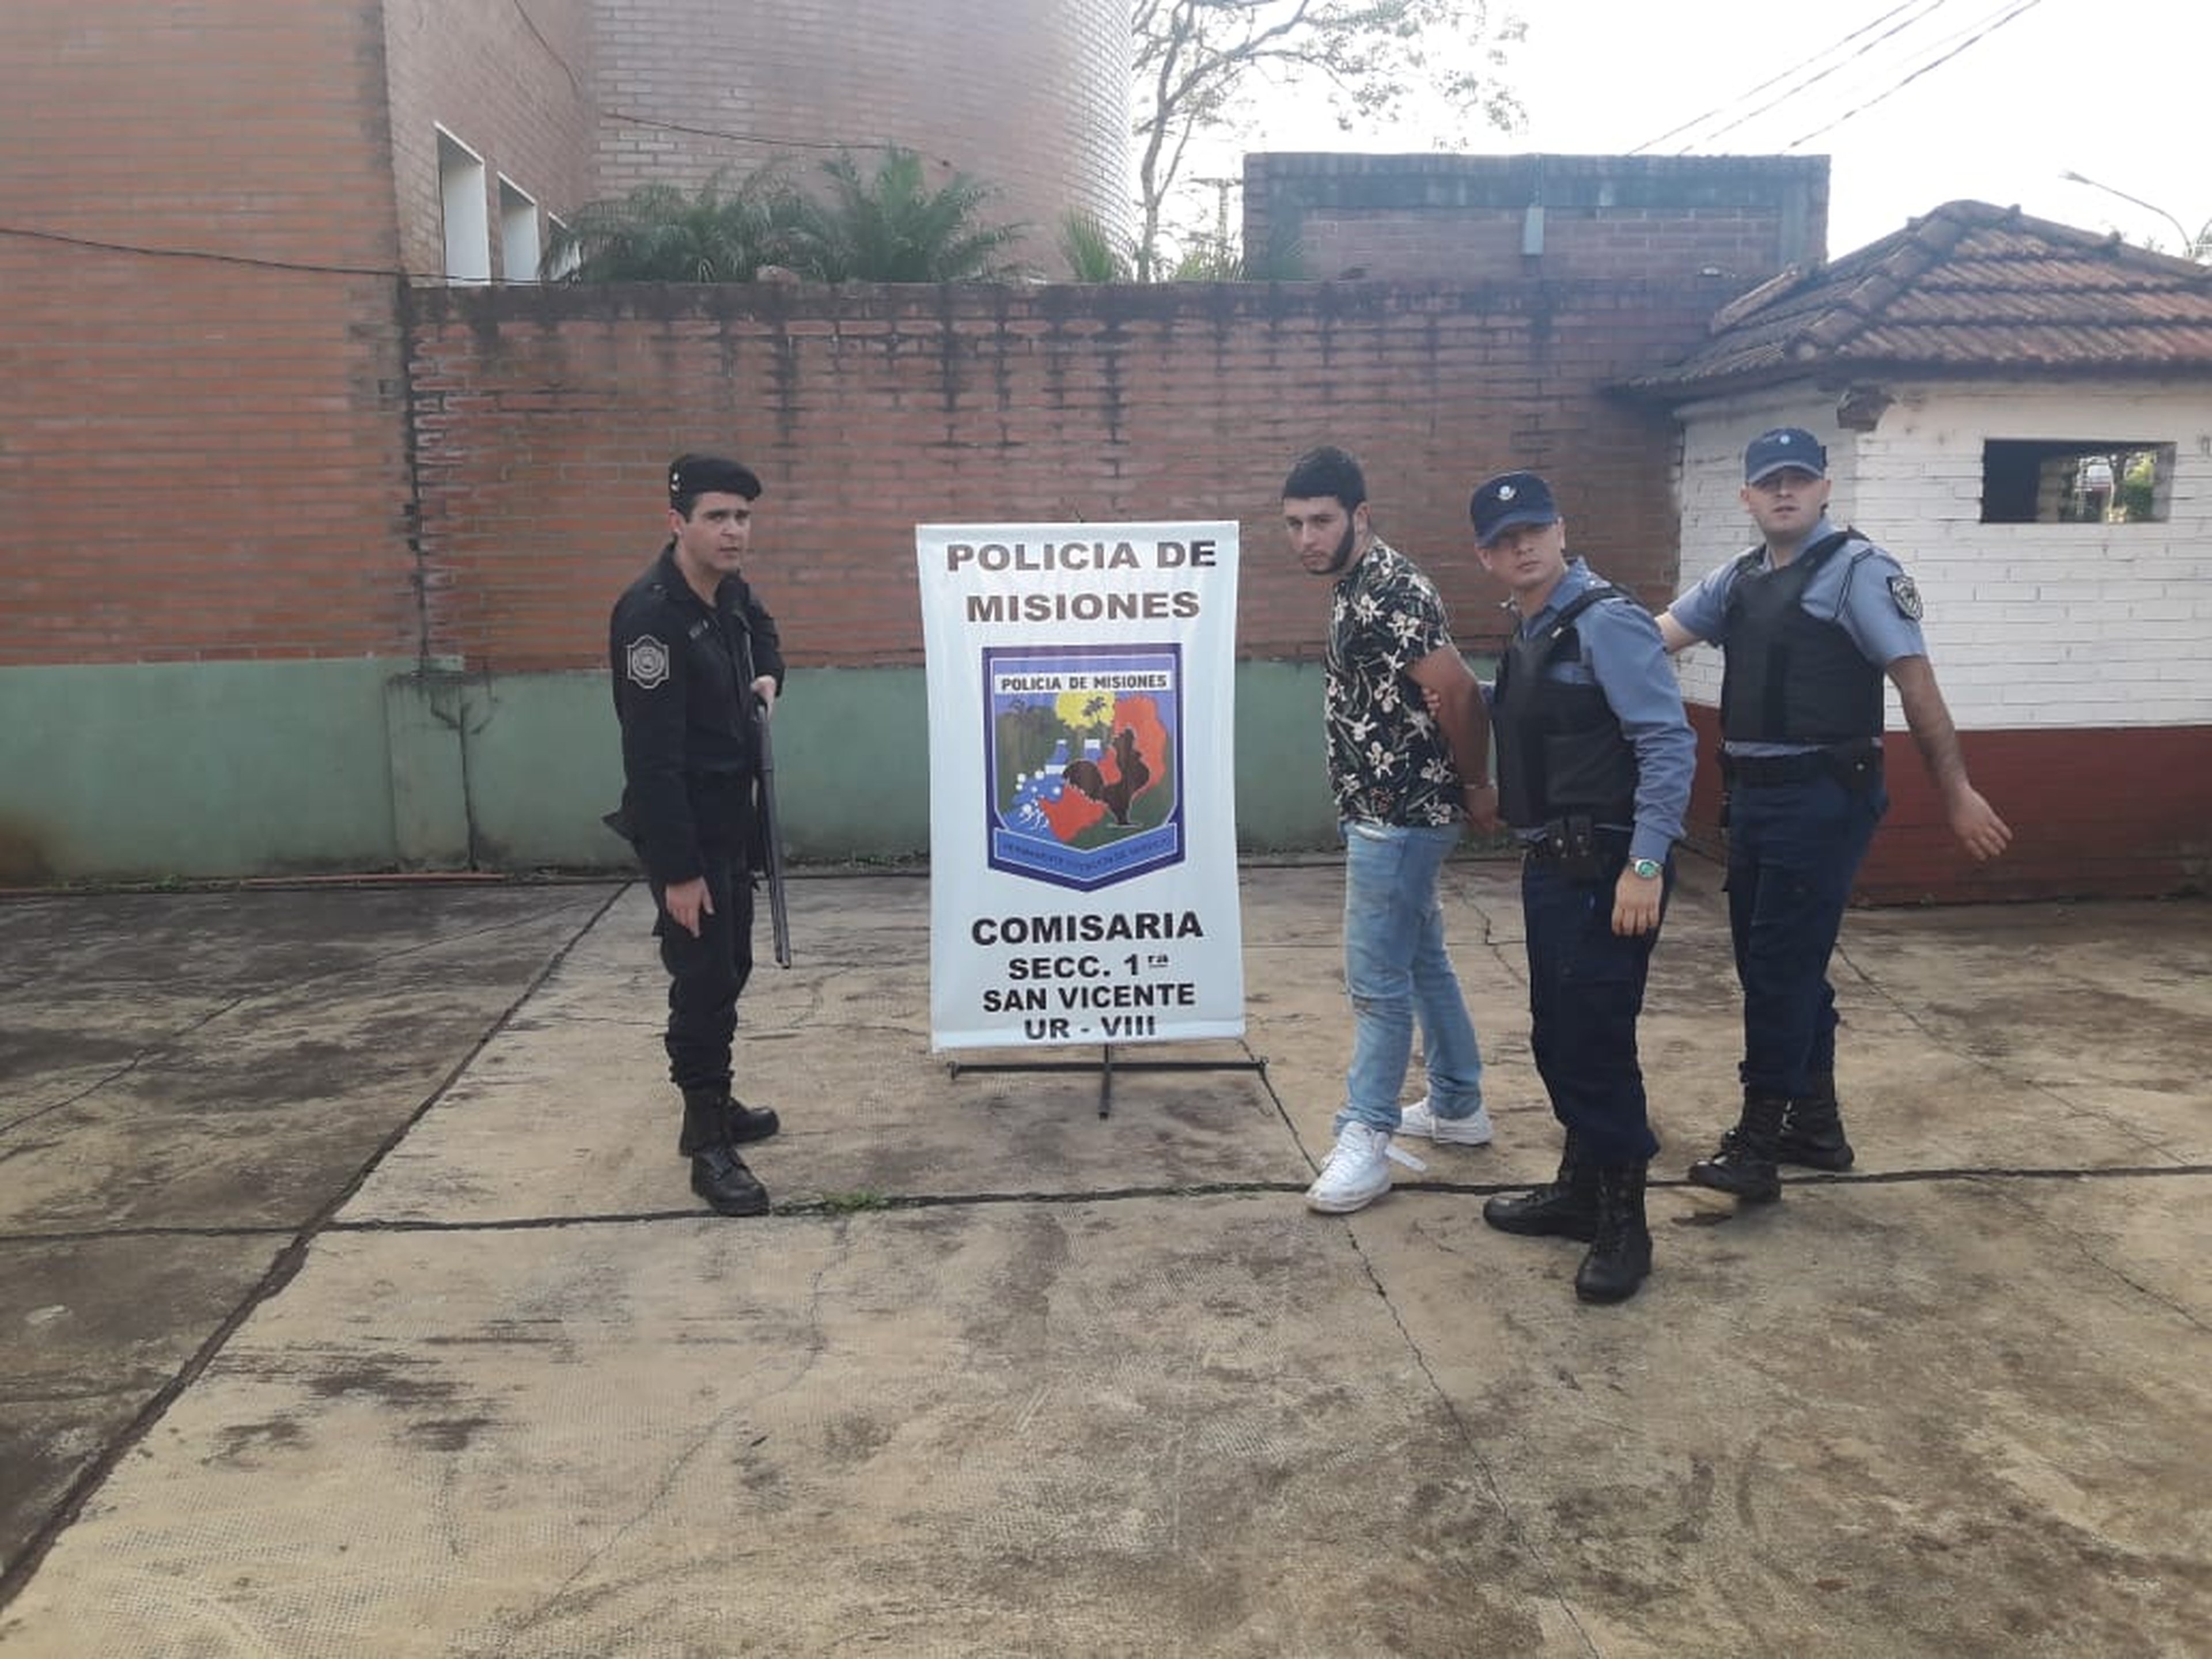 Policia de Misiones/Divulgação